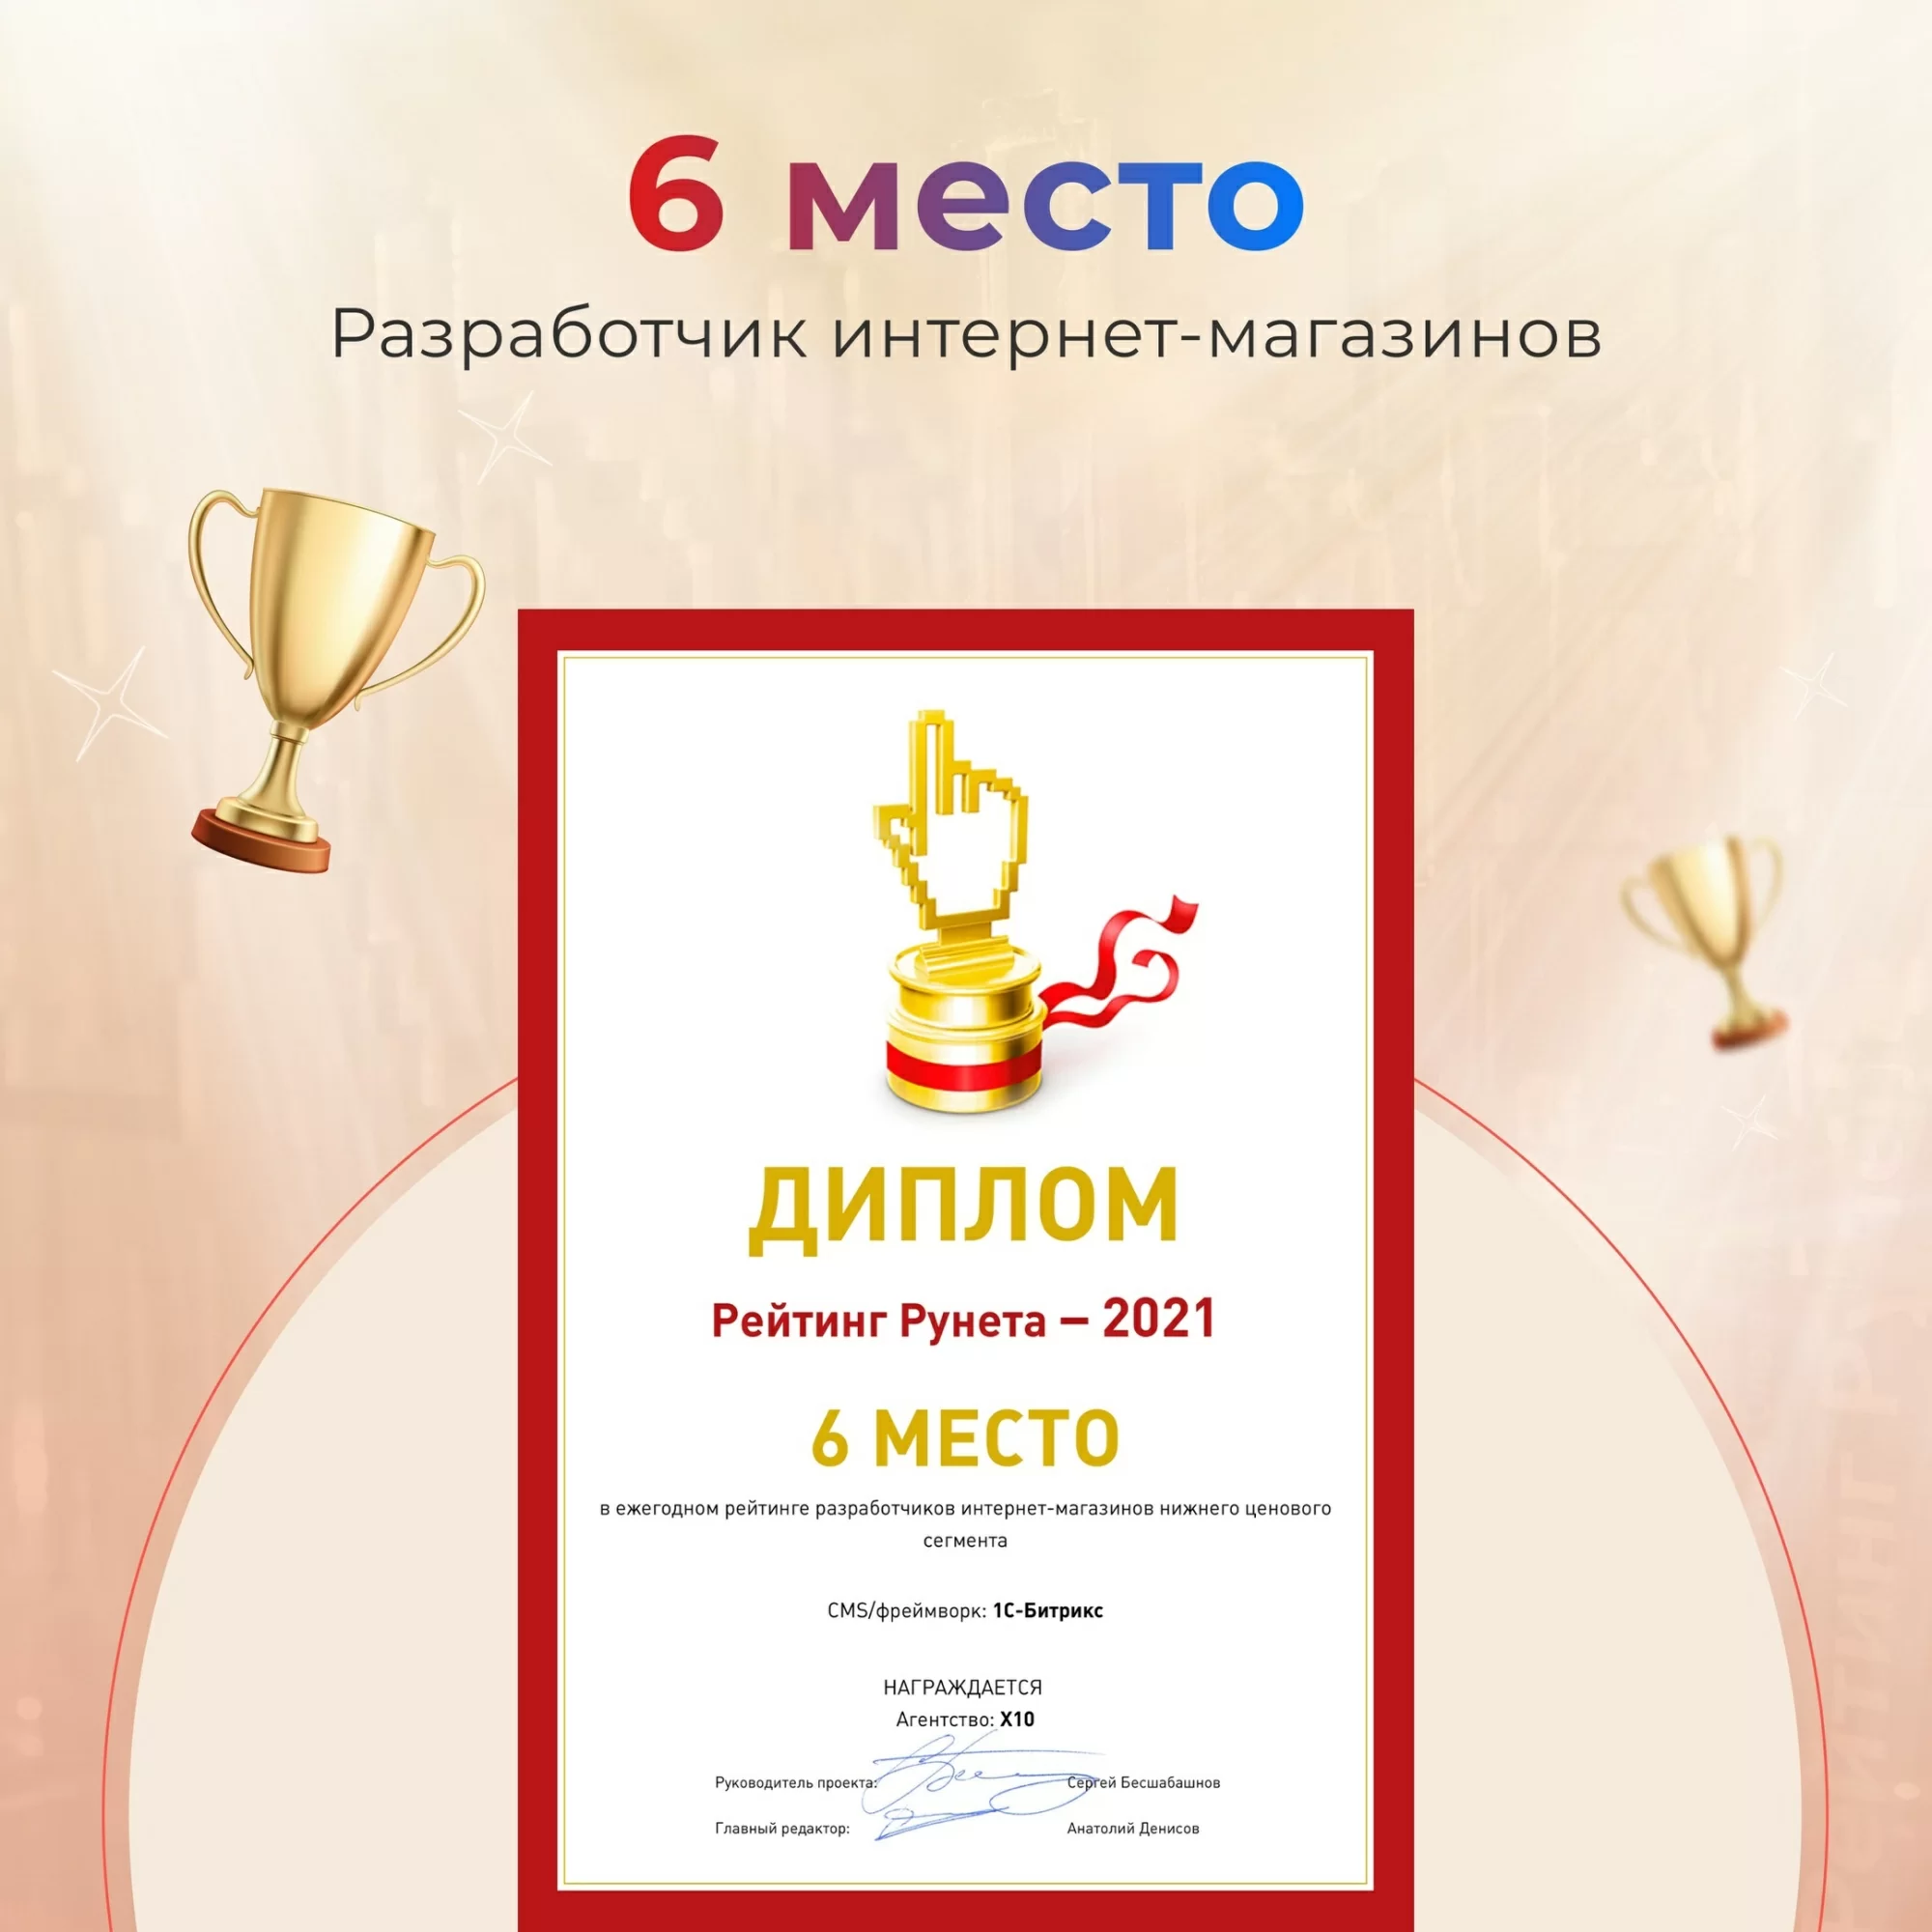 «Рейтинг Рунета» ТОП-6 Рейтинг лучших разработчиков интернет-магазинов на 1С-Битрикс